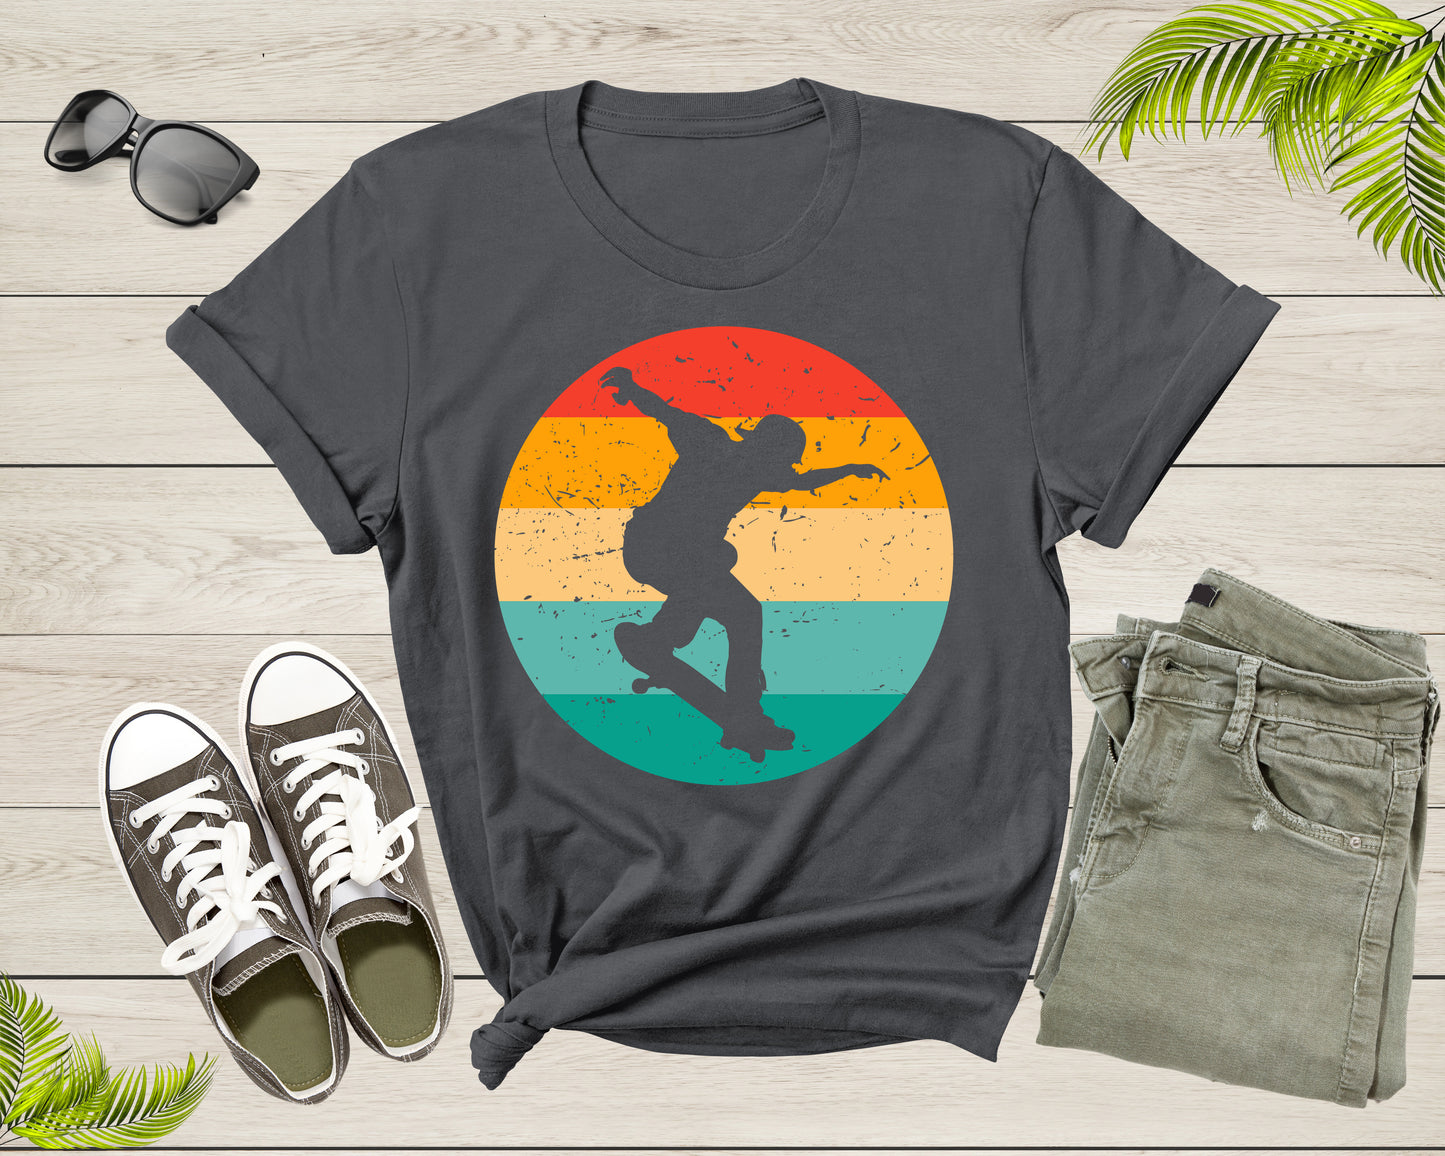 Vintage Retro Skateboarding Skateboarder For Men Boys Gift T-Shirt Skateboarder Skating Lover Gift for T Shirt for Women Girls Teens